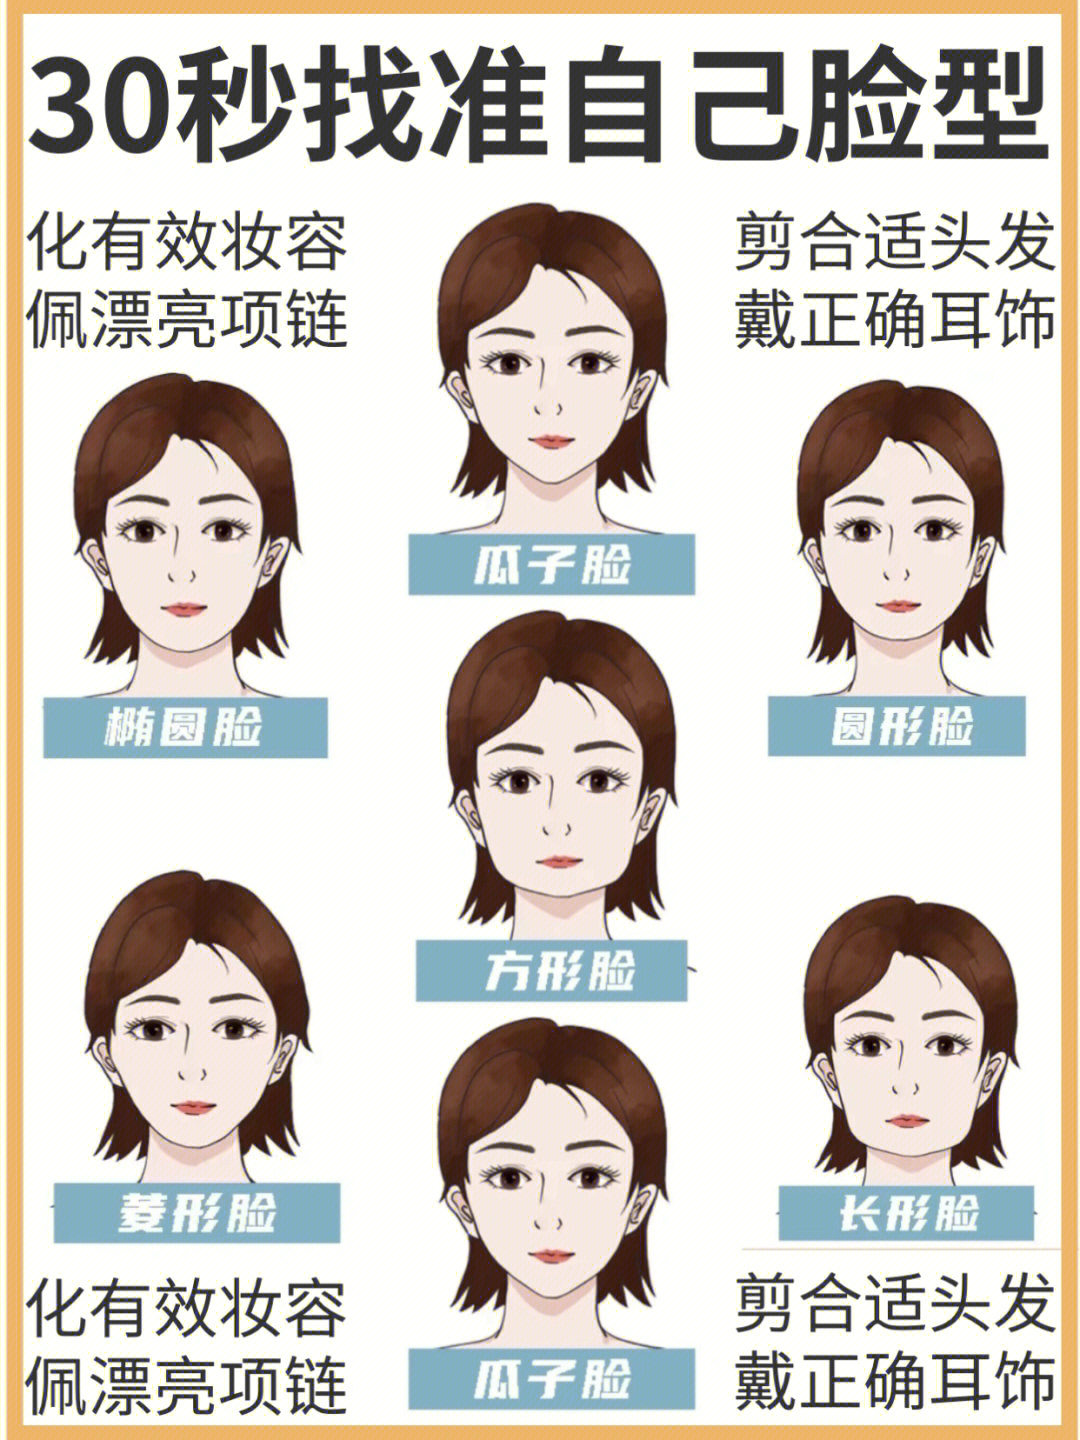 常见的脸型分为:方形脸(长方脸,短方脸,方圆脸),圆形脸(短圆脸,长圆脸